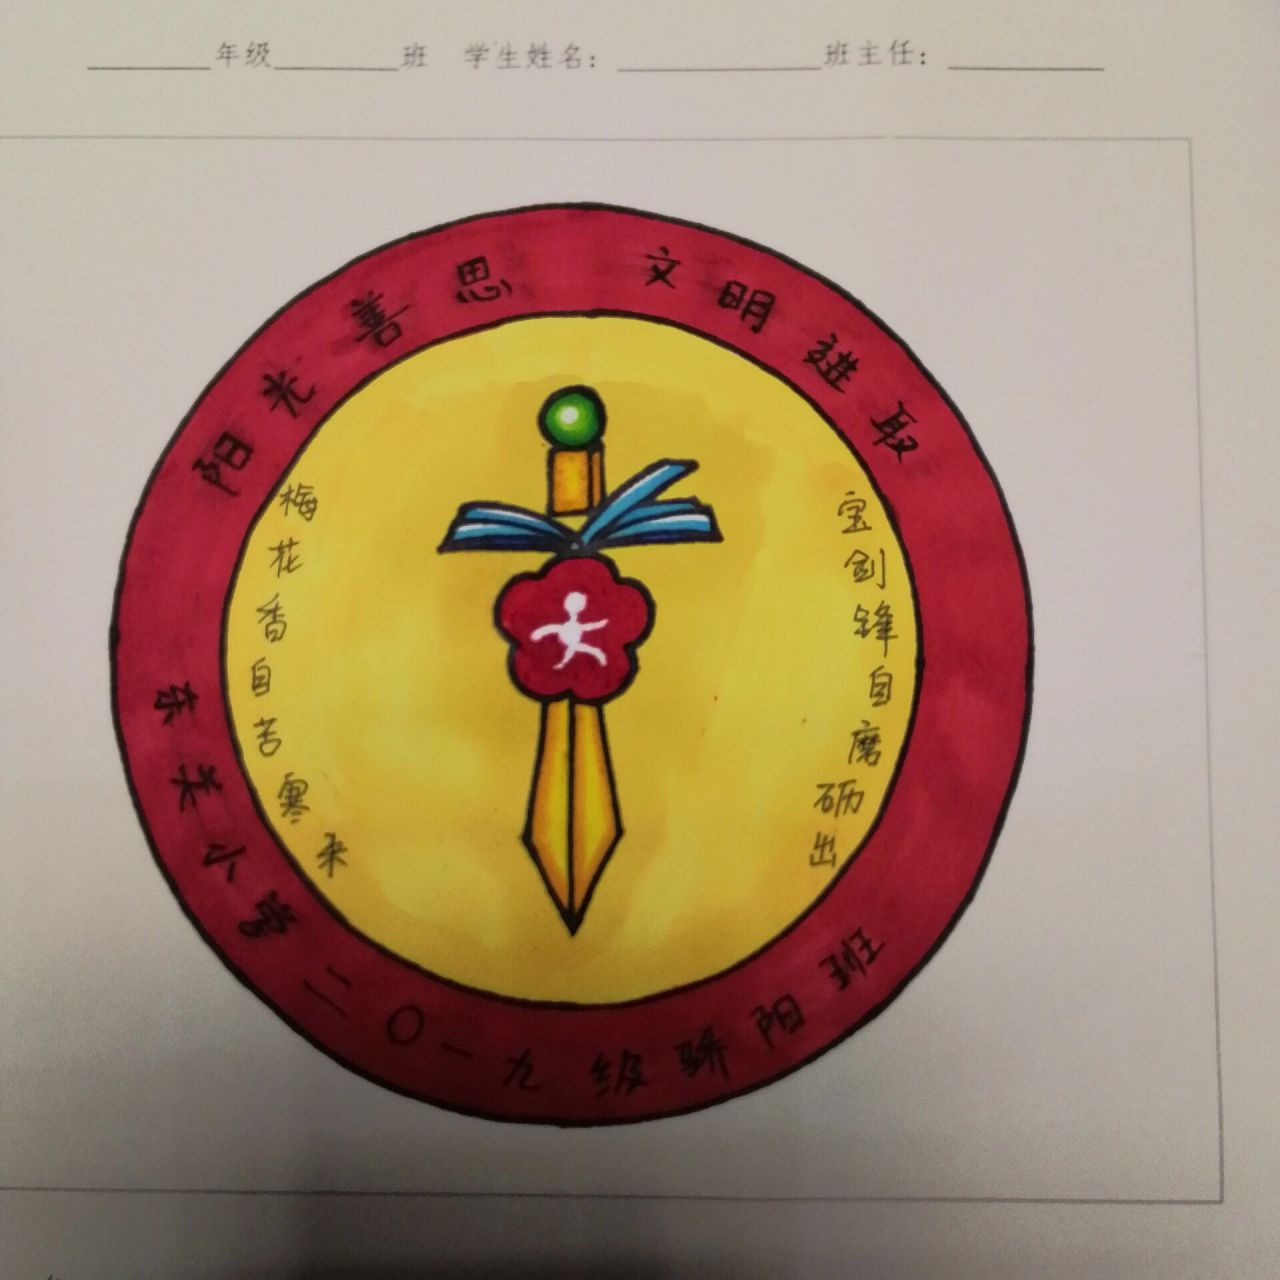 班级徽章怎么画 logo图片